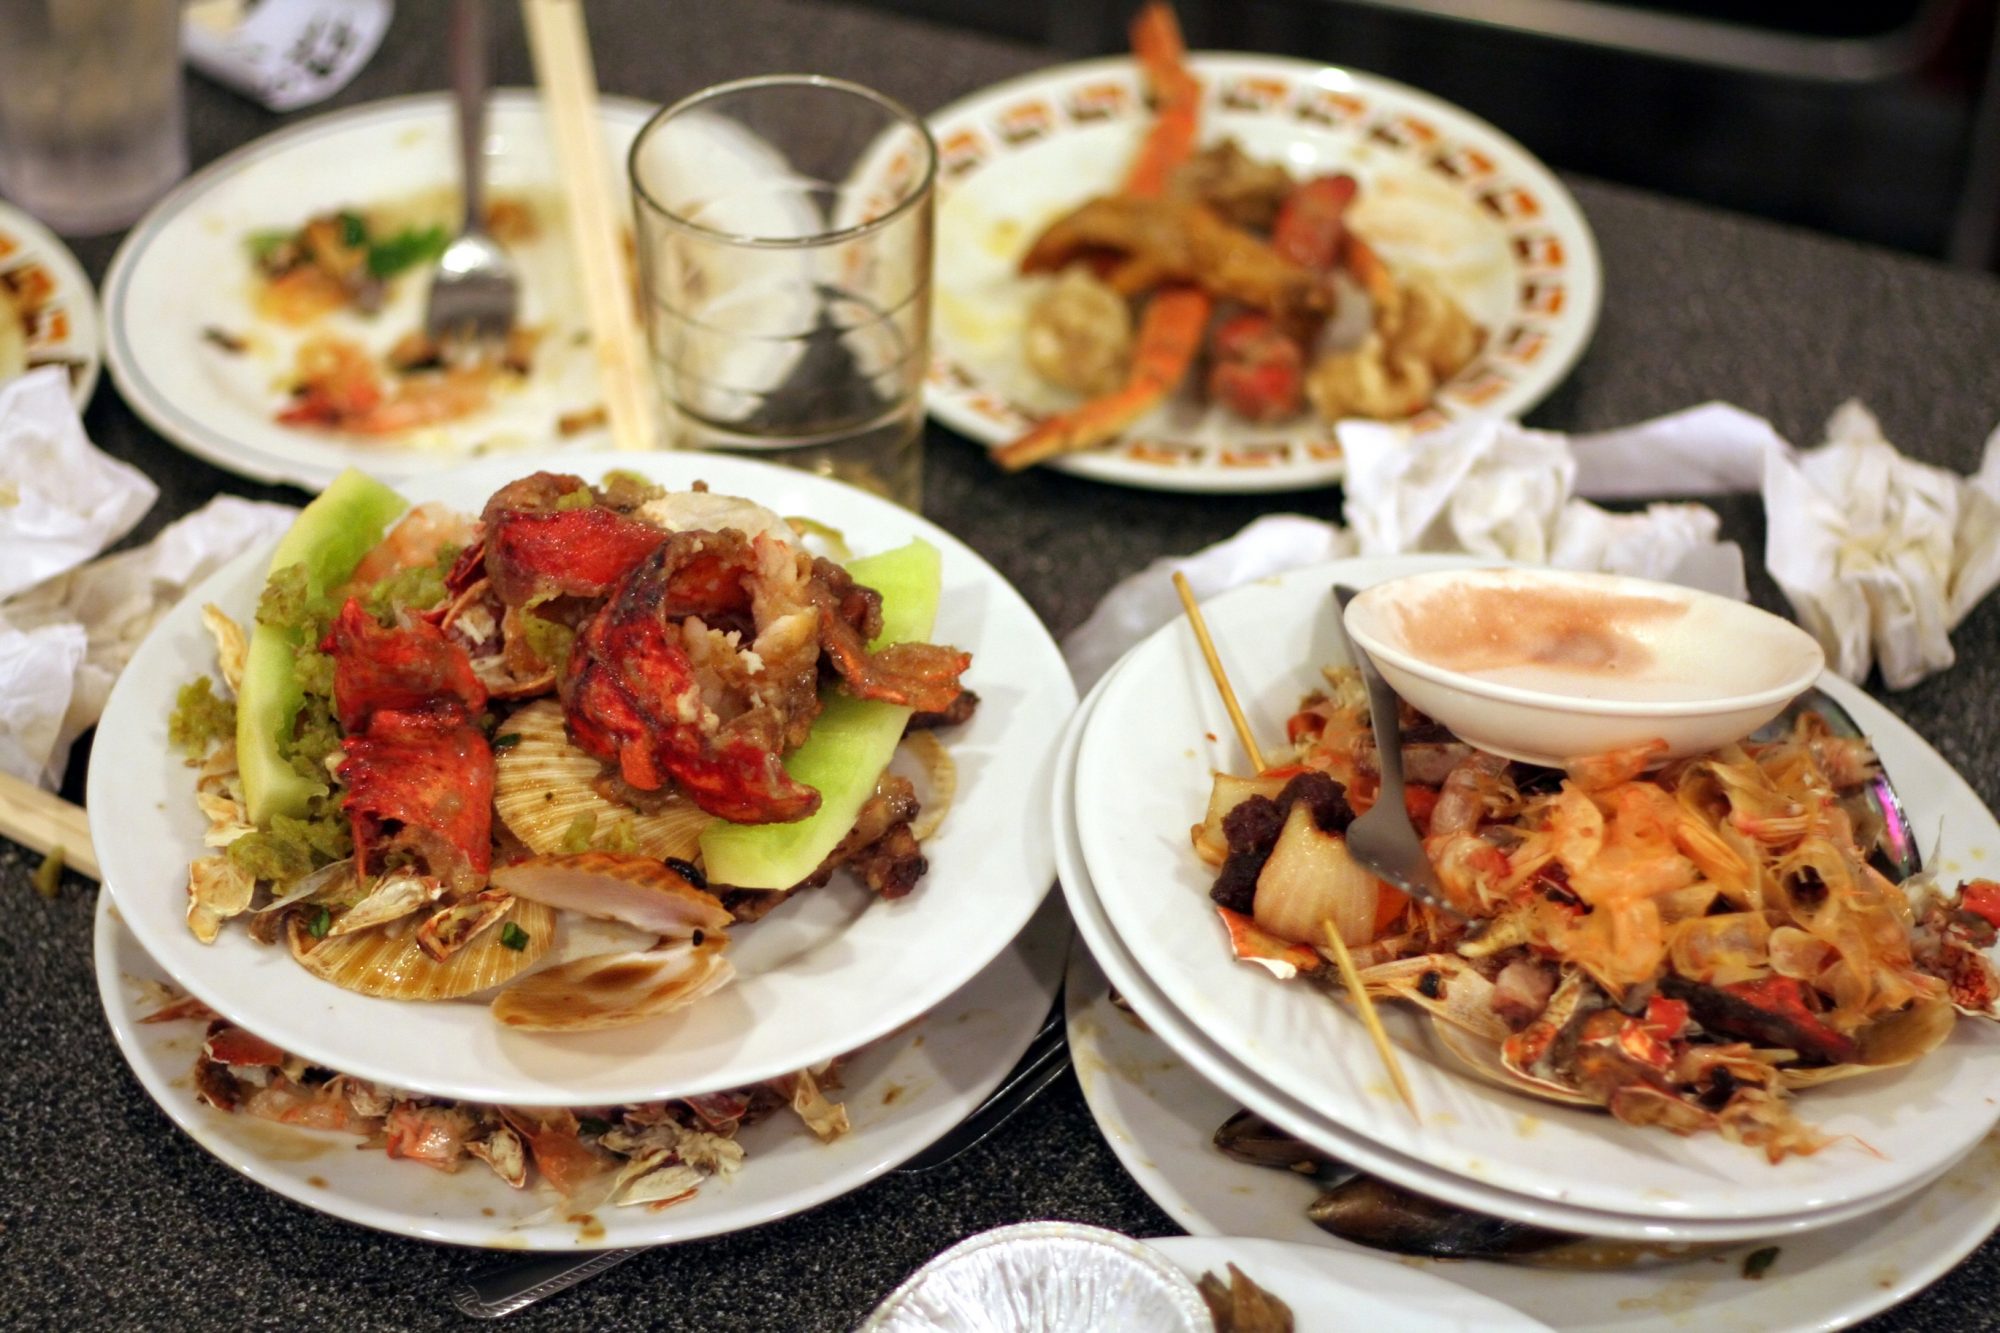 restaurant food waste management